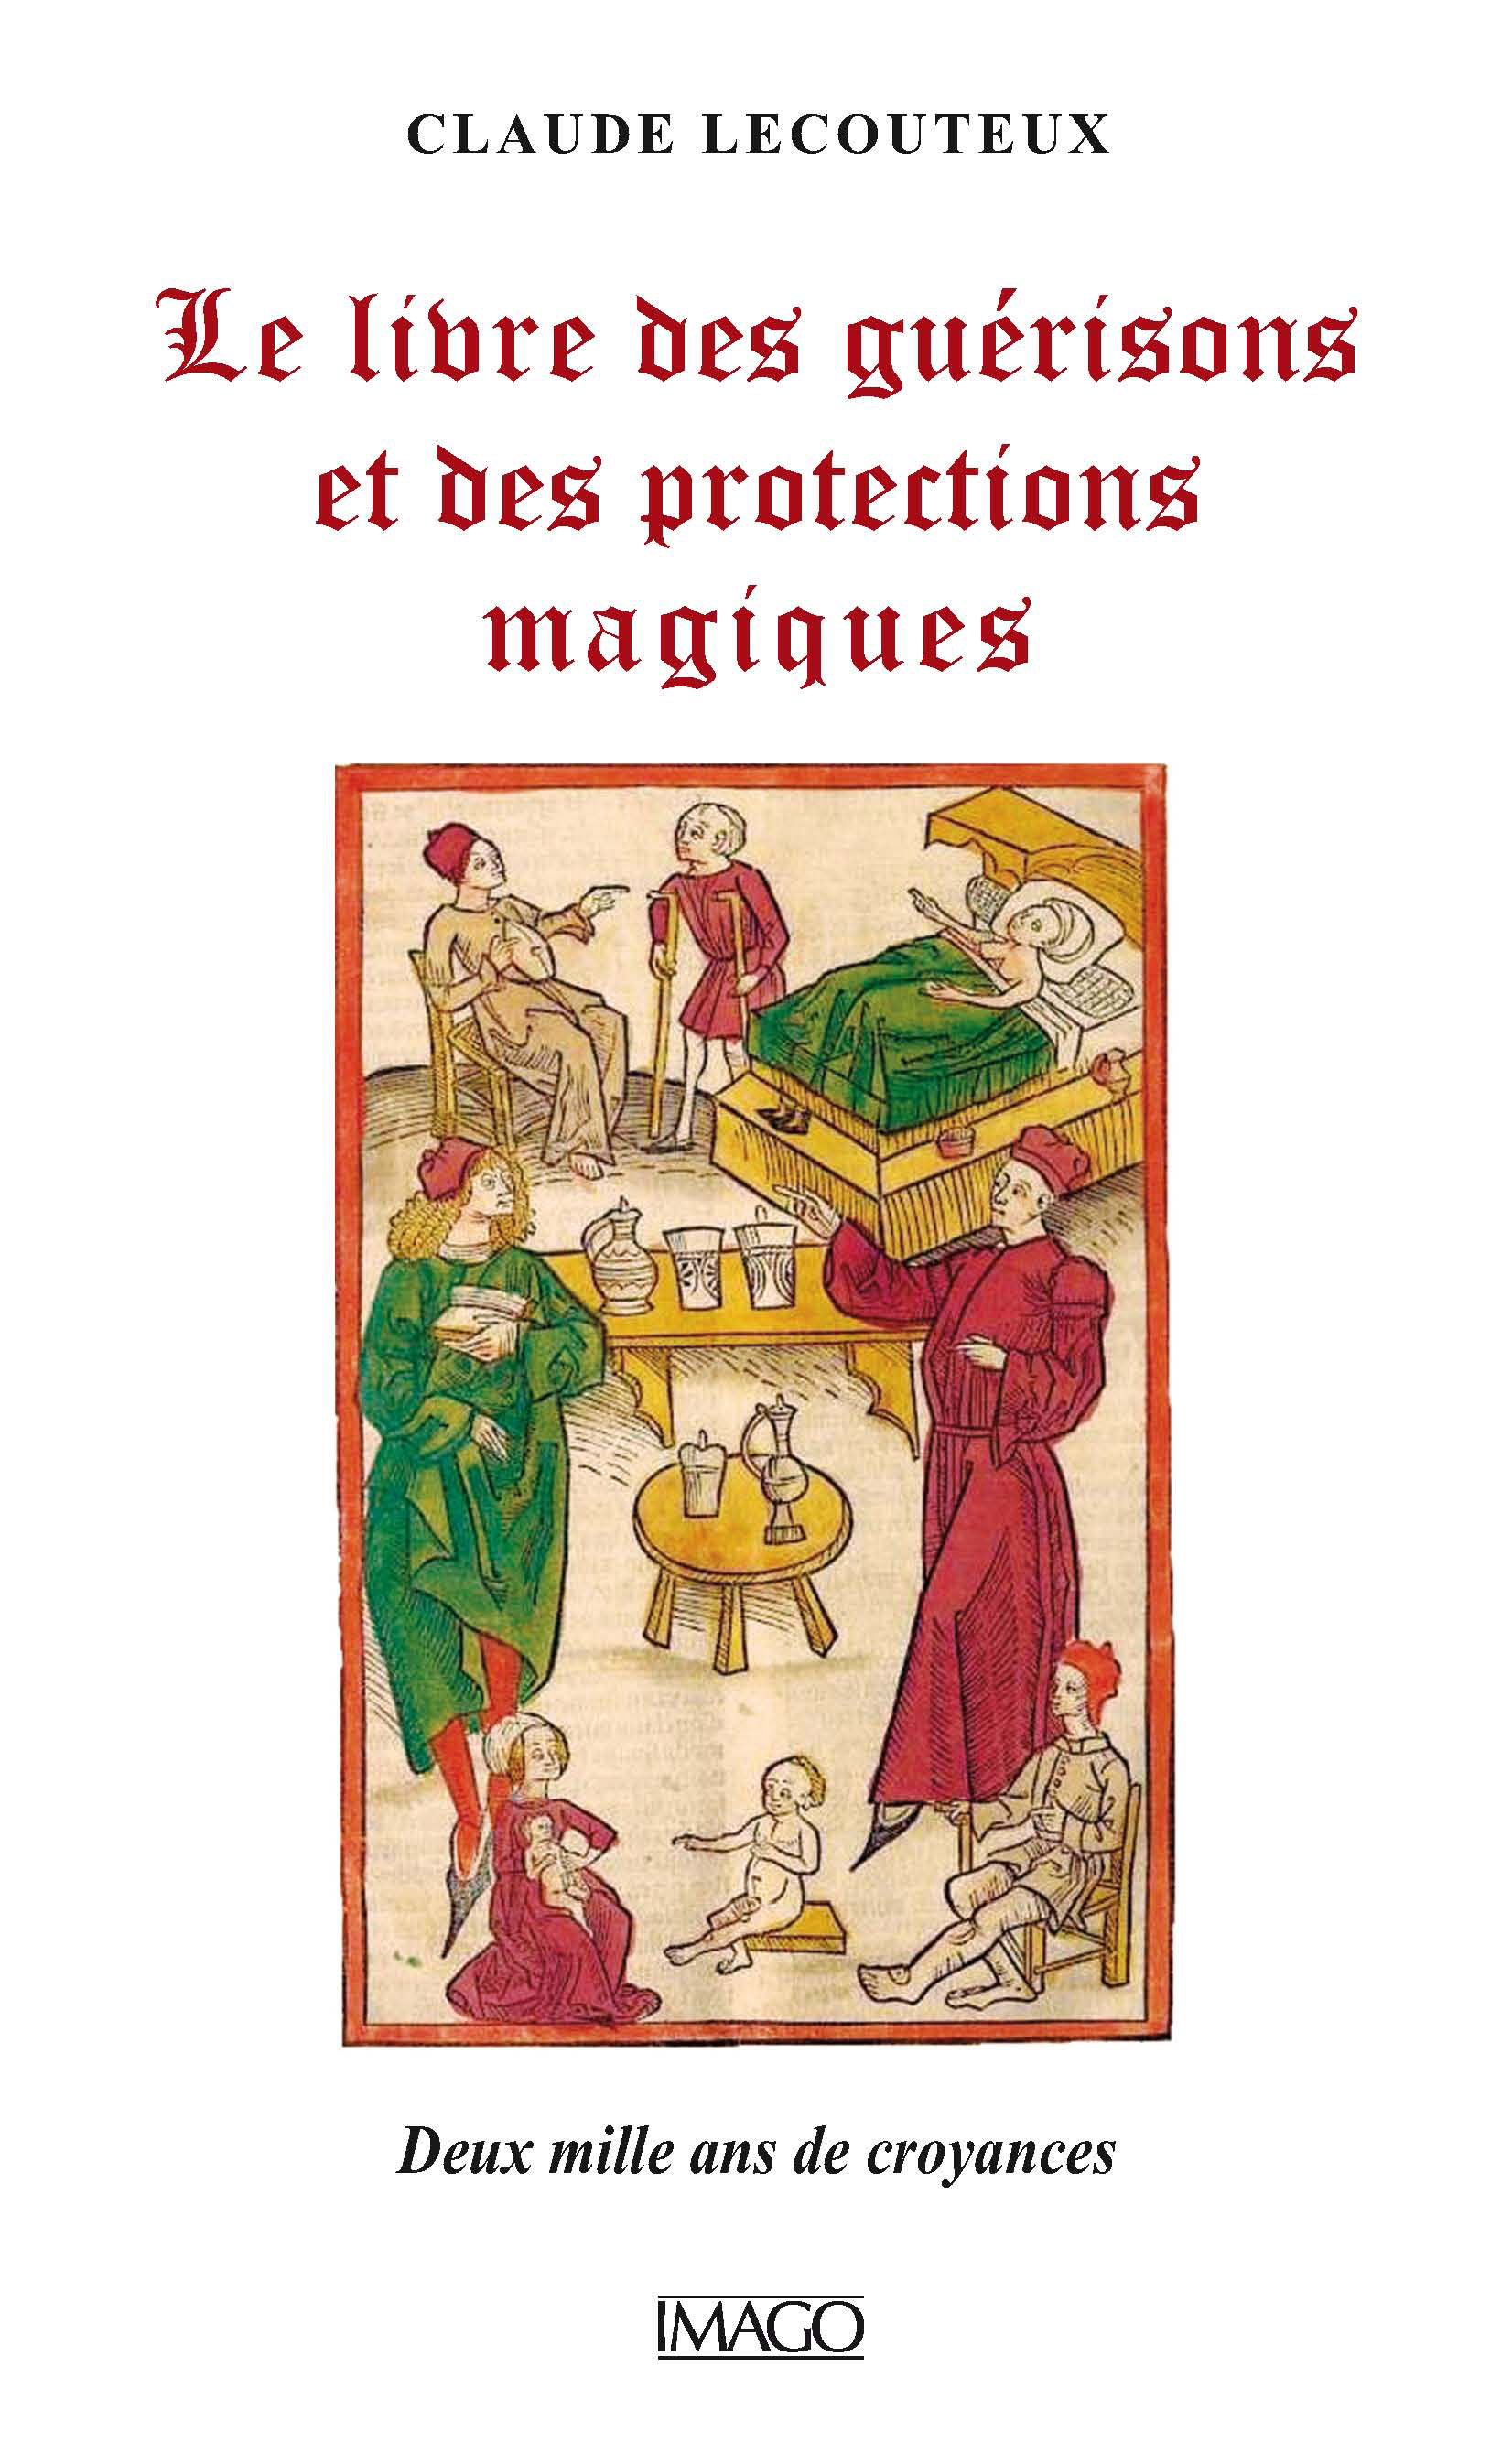 Le Livre des guérisons et des protections magiques. Deux mille ans de croyances, 2016, 320 p.